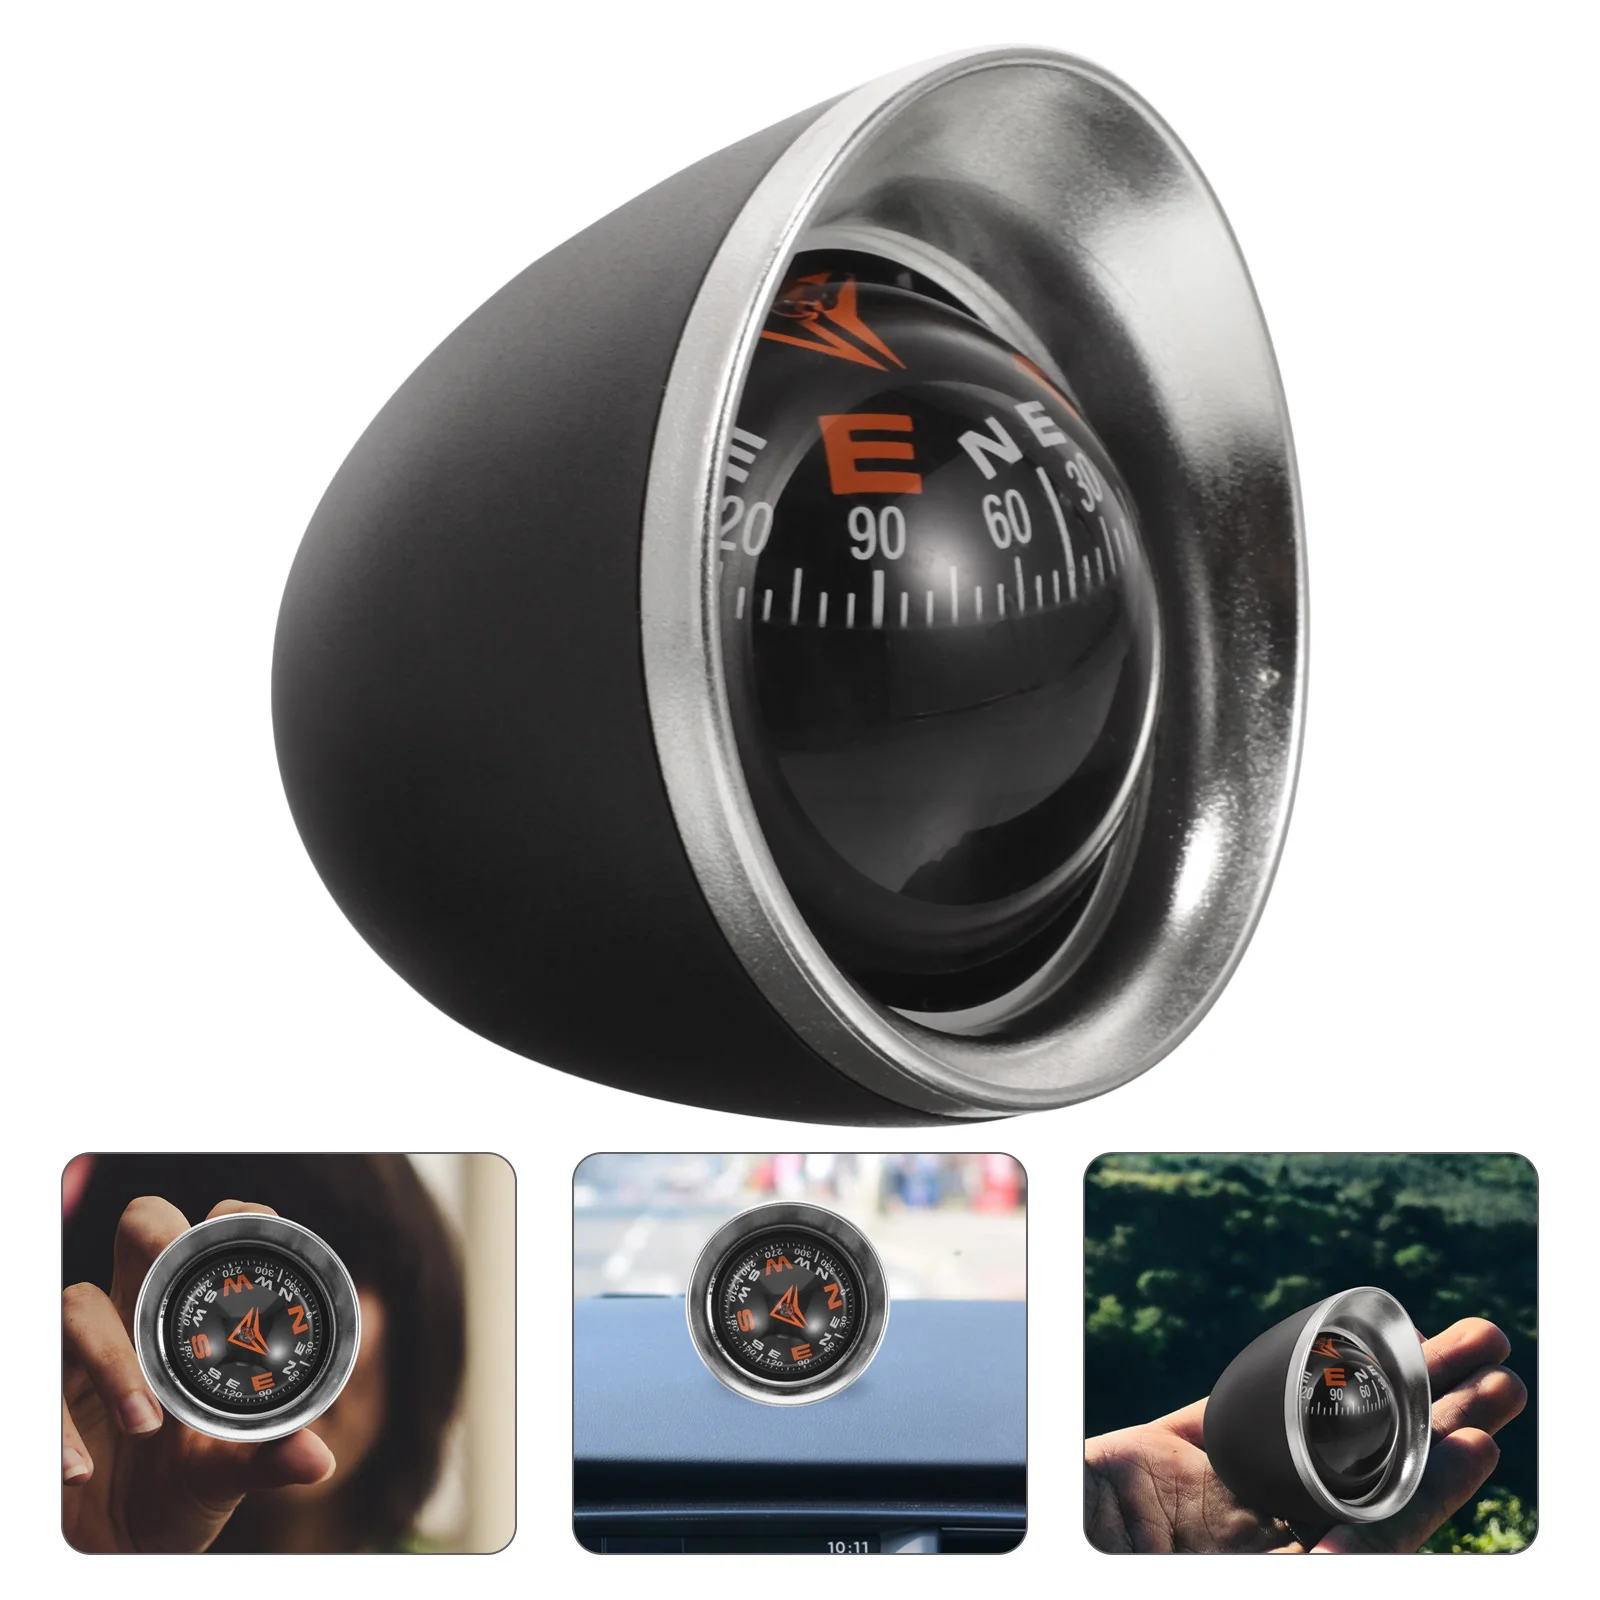 Car Compass Точно отчитане Две в едно с термометър пластмасово табло Ръководство топка навигационни инструменти за превозно средство / кола / авто